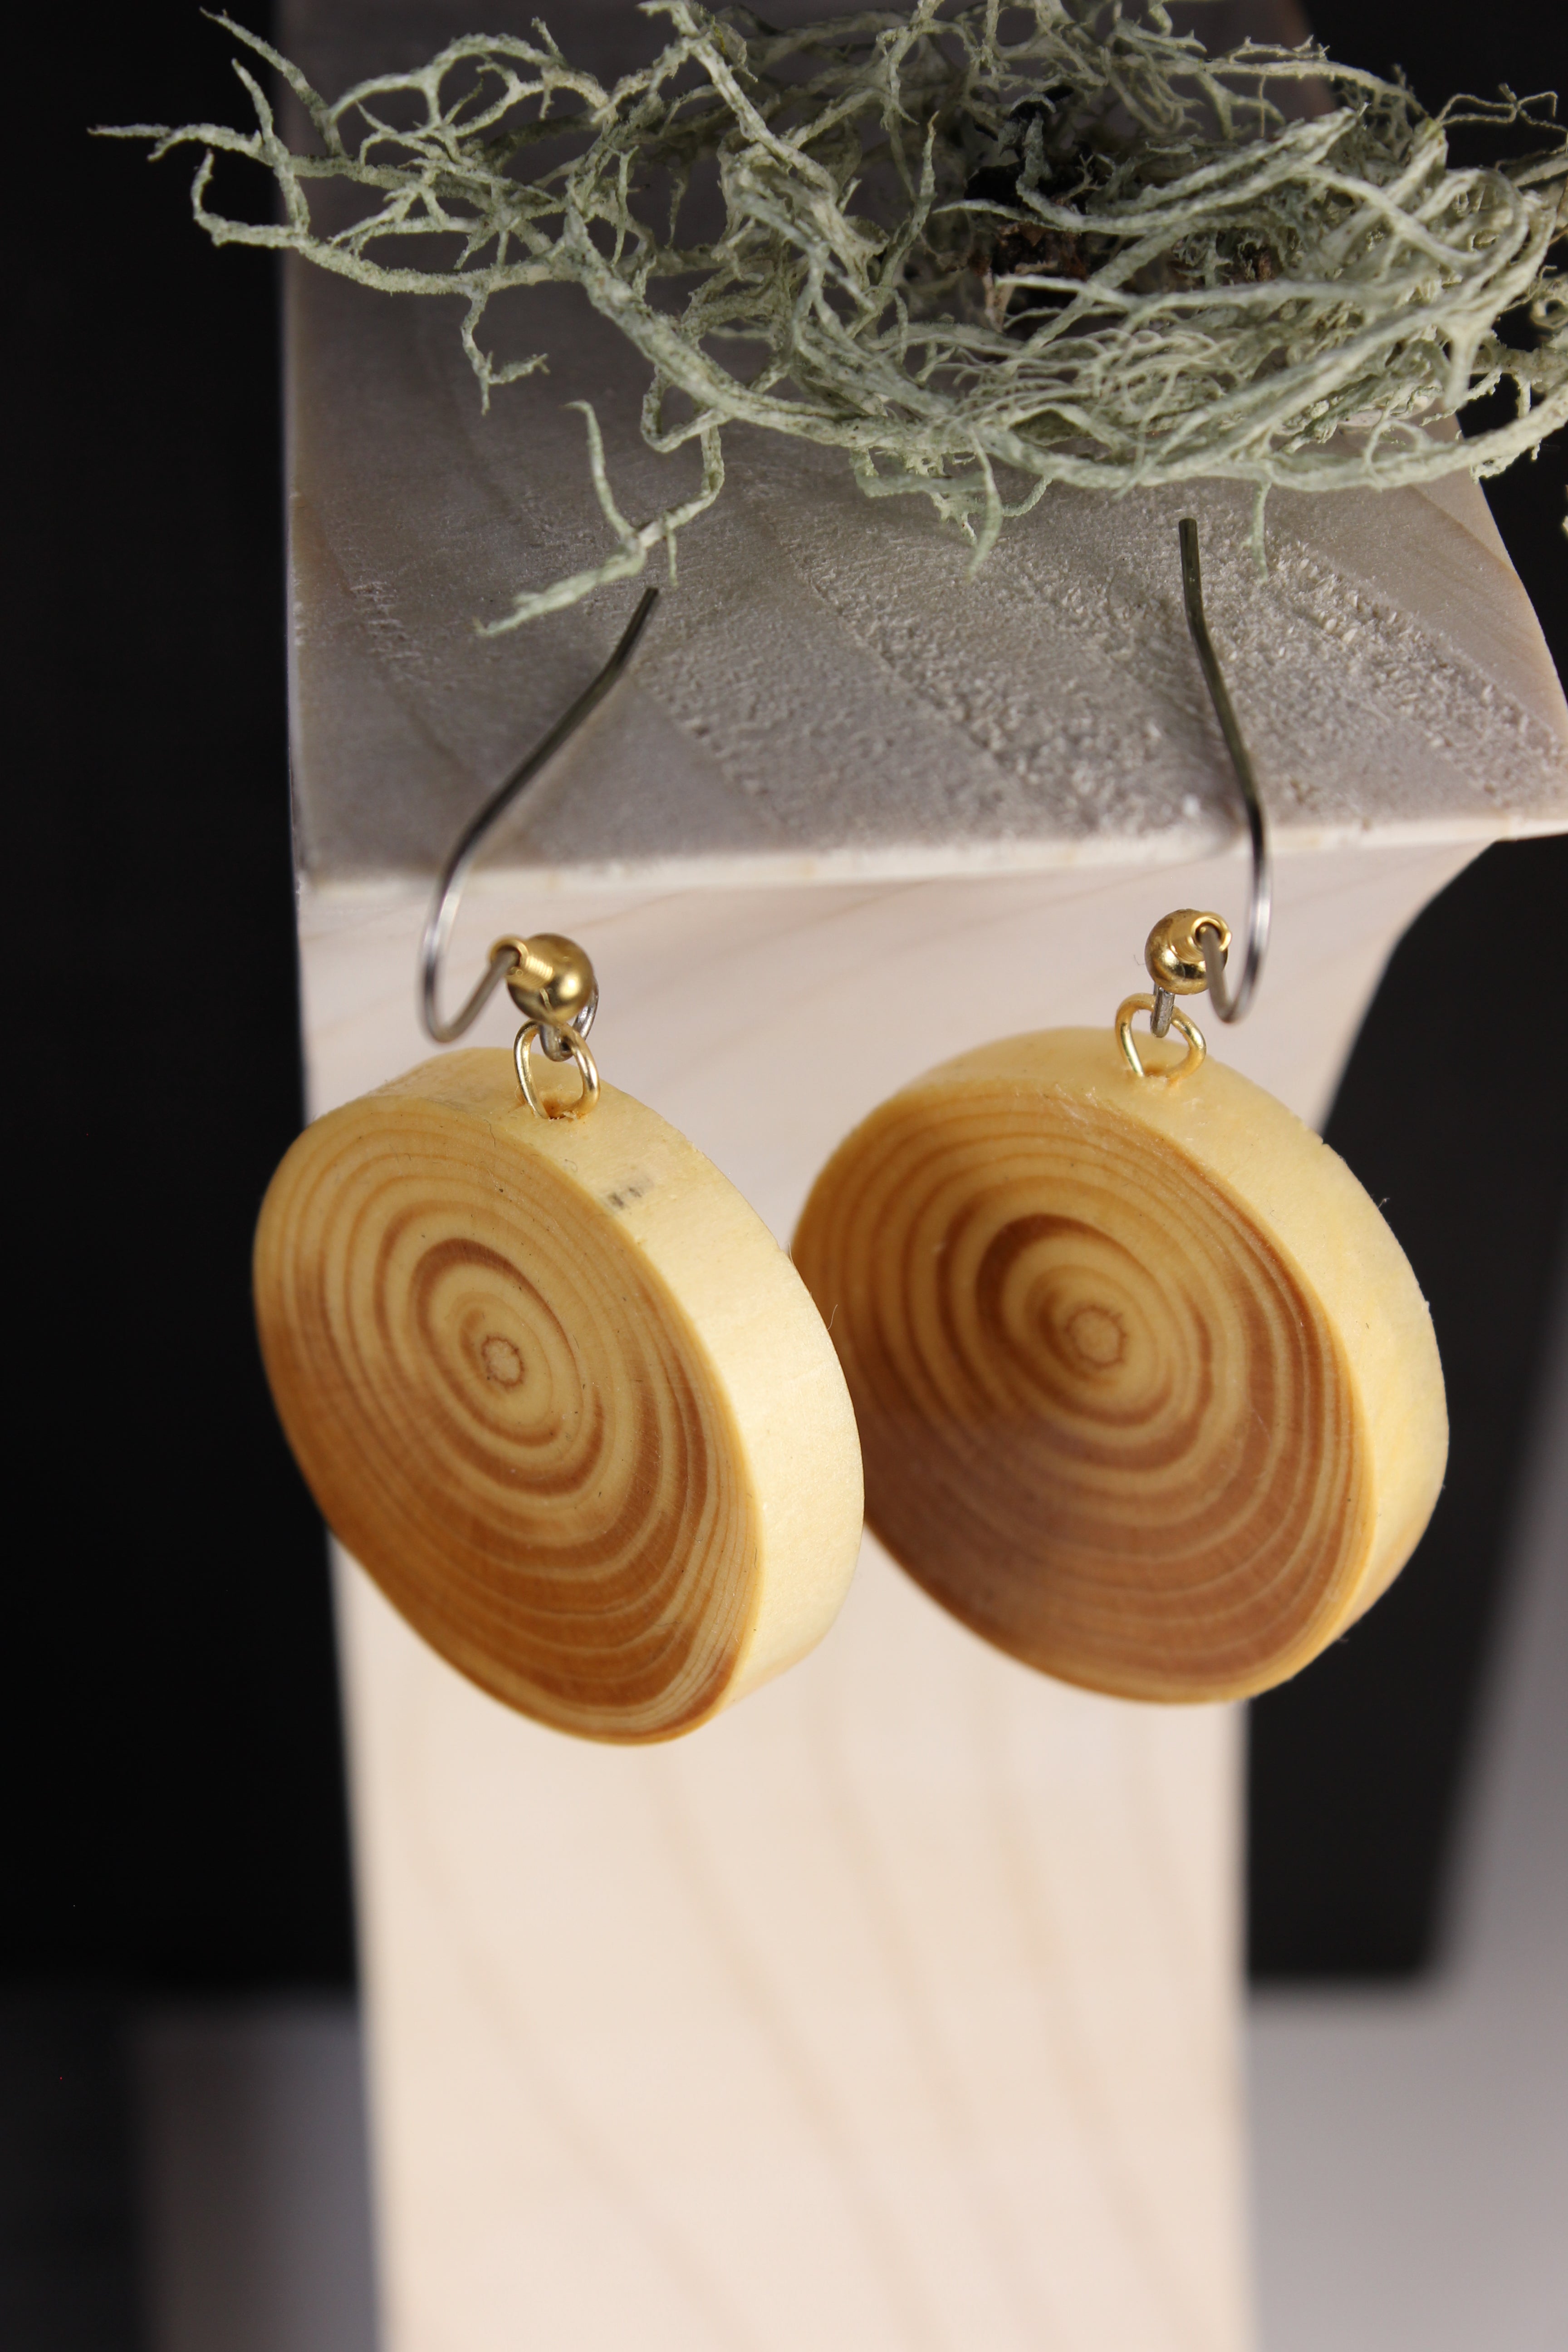 Spruce earrings